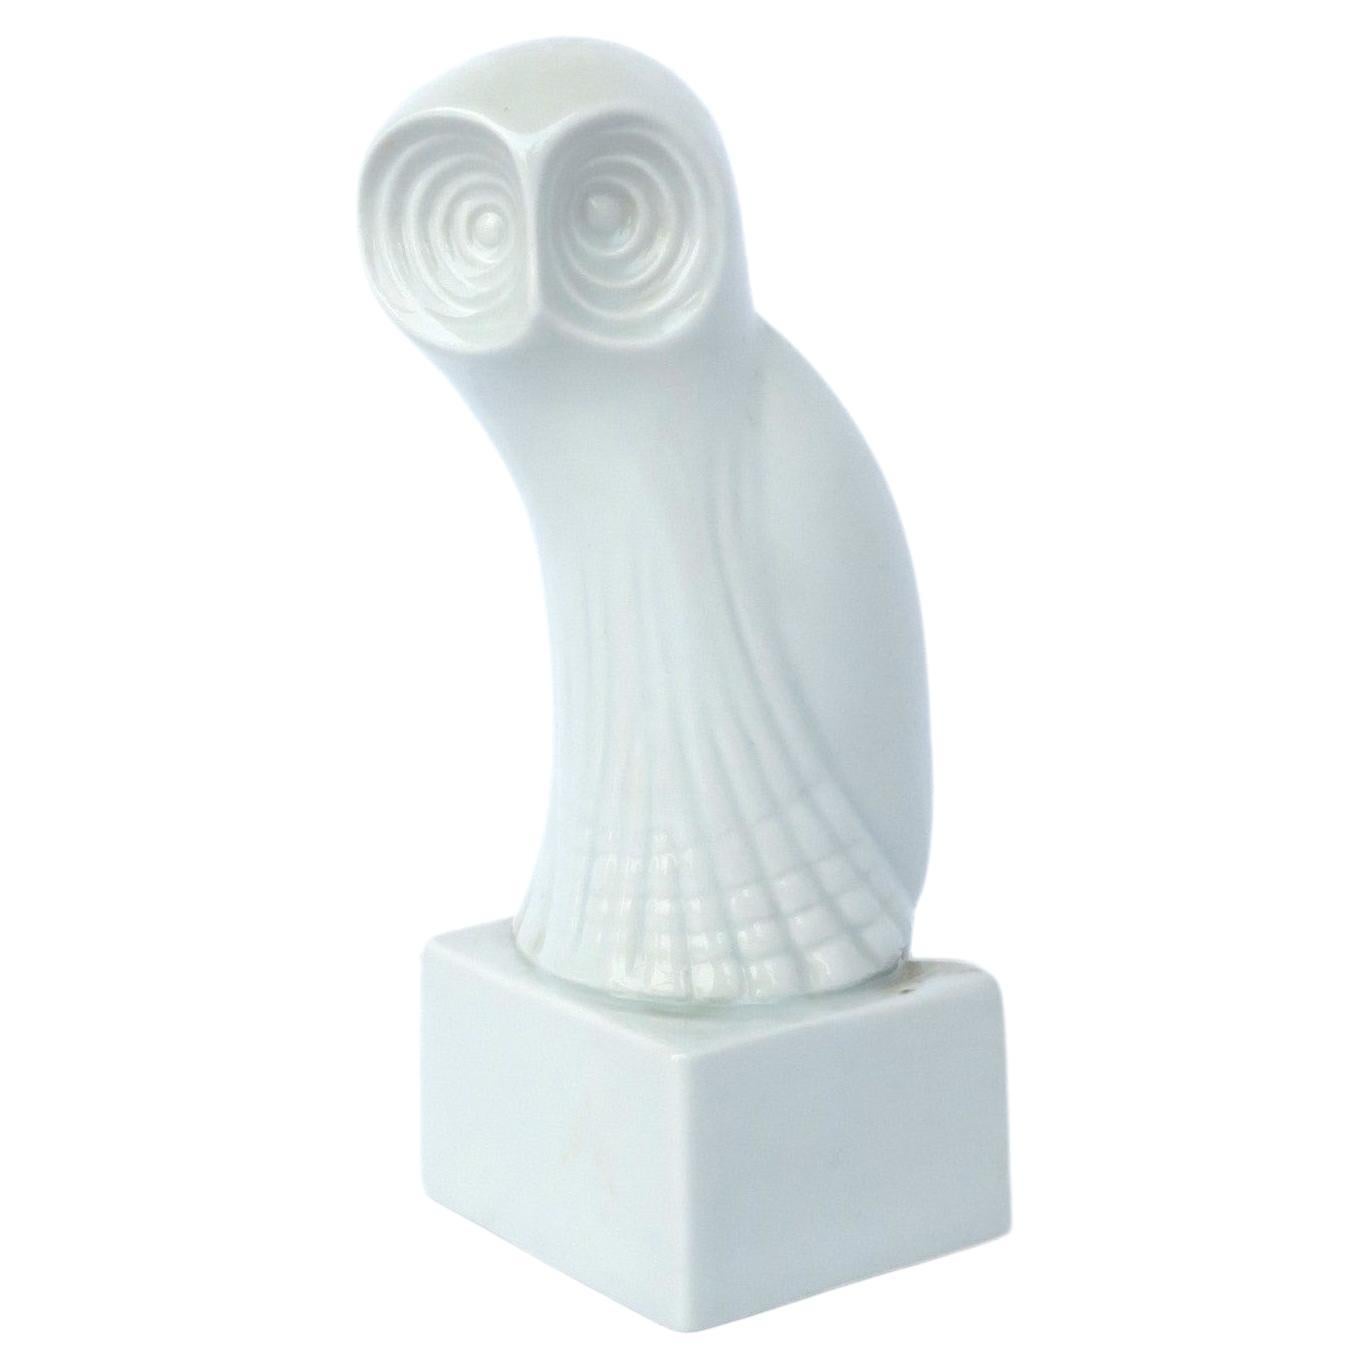 Sculpture d'objet en porcelaine - Hibou blanc